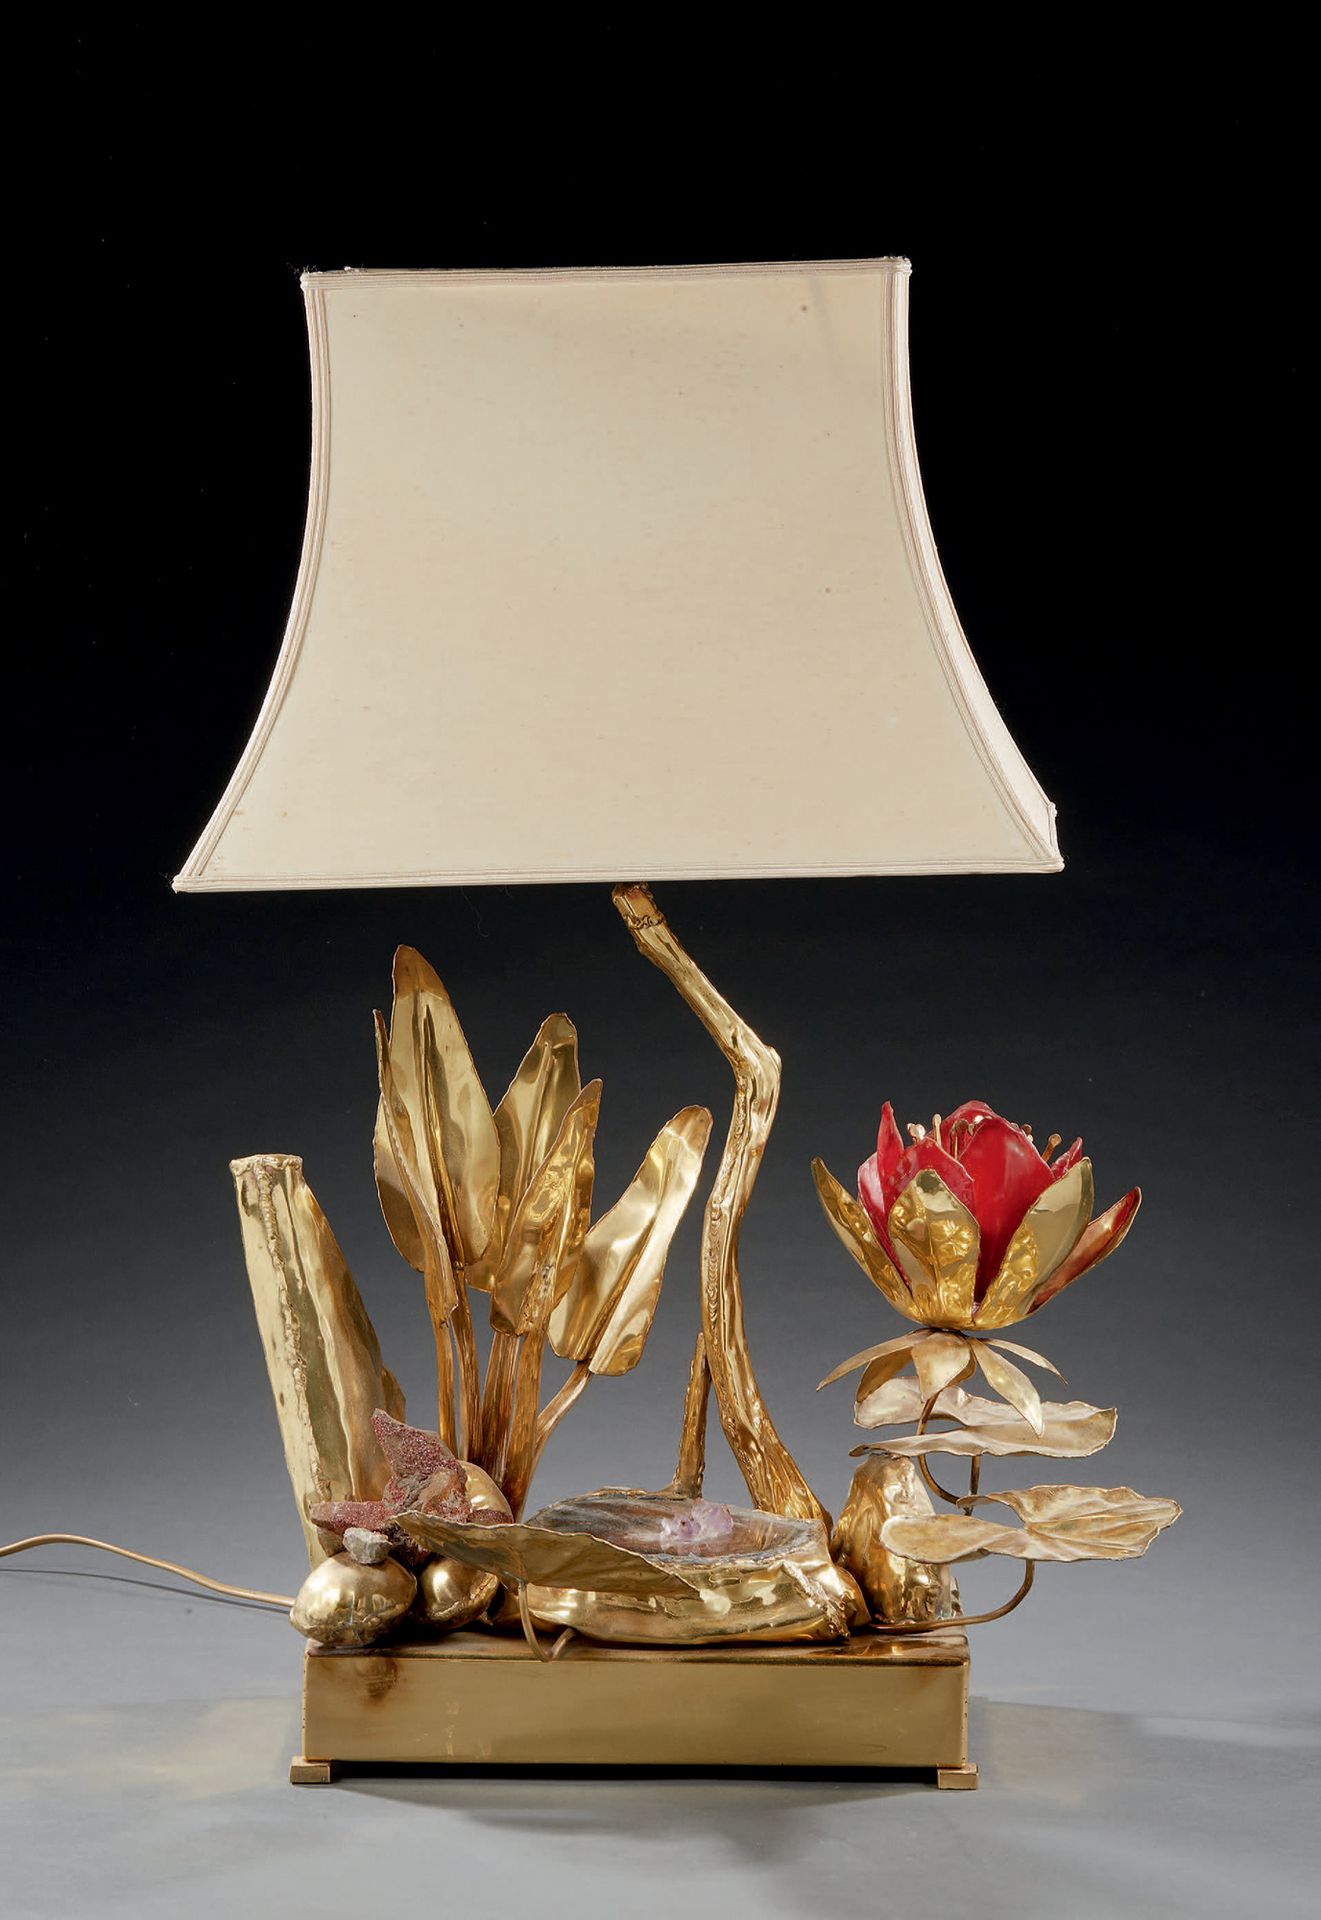 TRAVAIL DES ANNÉES 1970 
Lámpara de metal dorado, piedra dura y cristal rojo con&hellip;